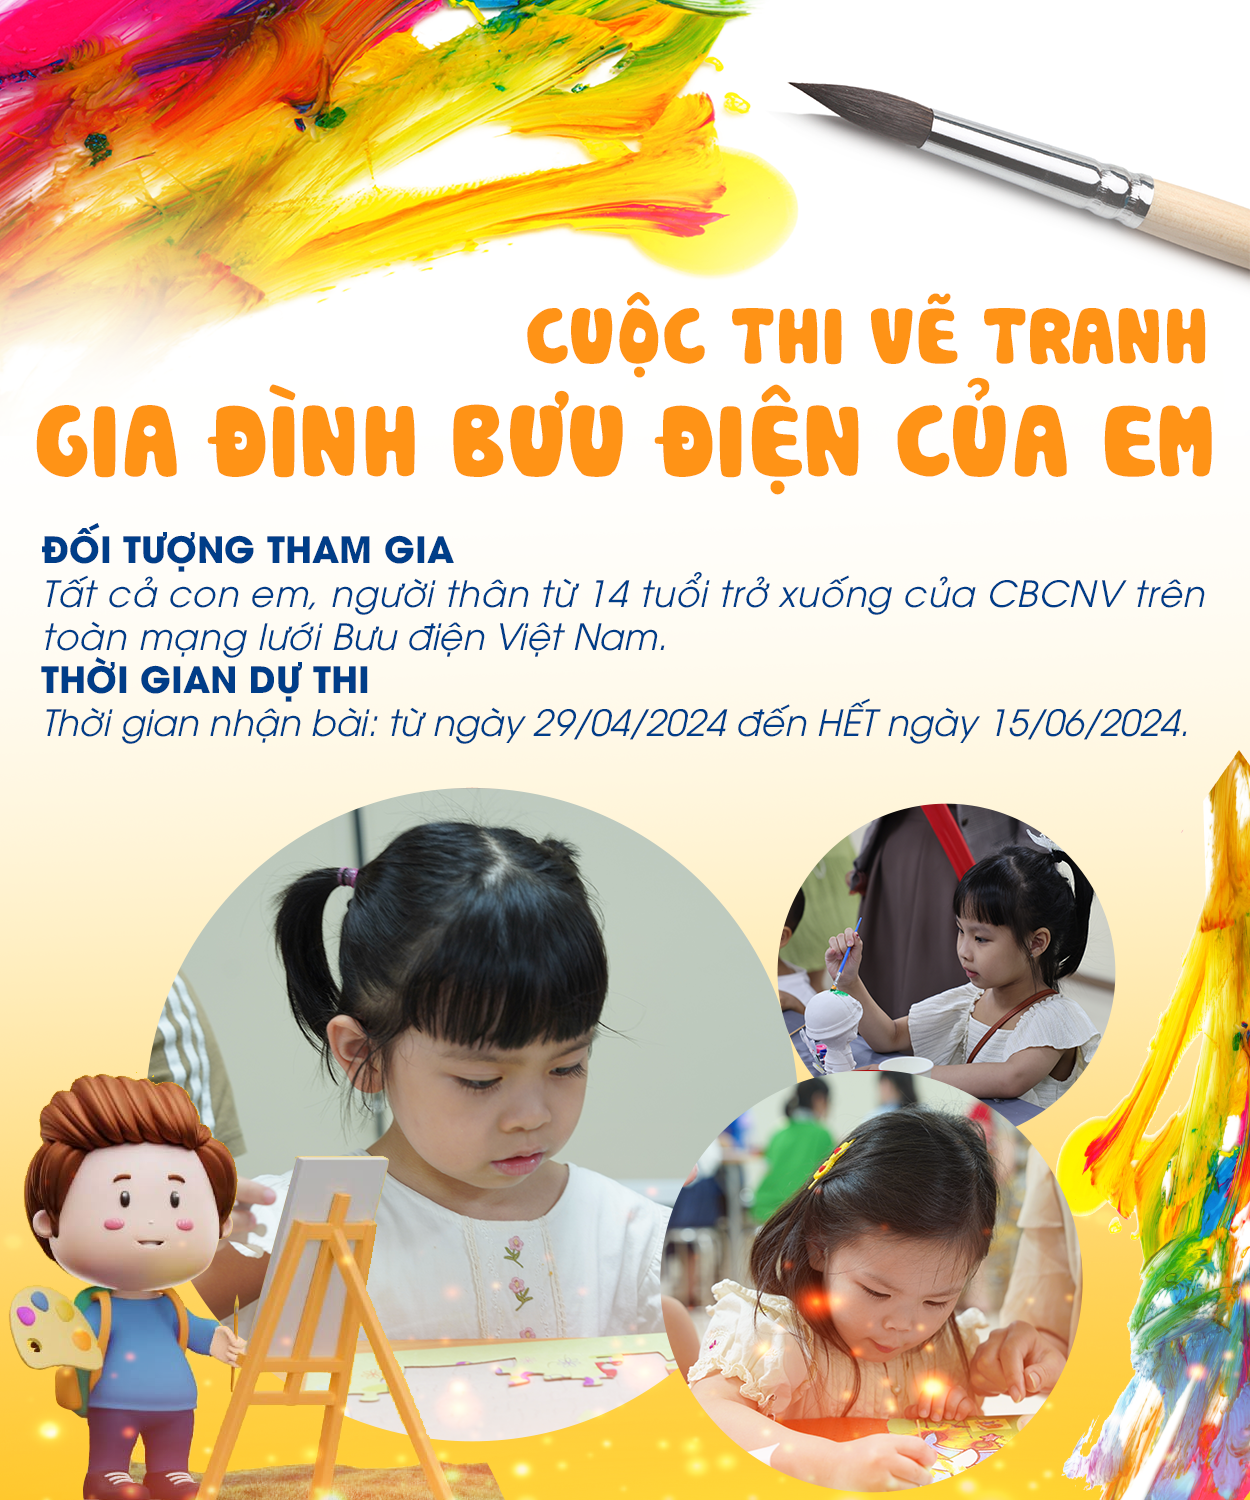 Tổng công ty Bưu điện Việt Nam phát động Cuộc thi Vẽ tranh “Gia đình Bưu điện của em”